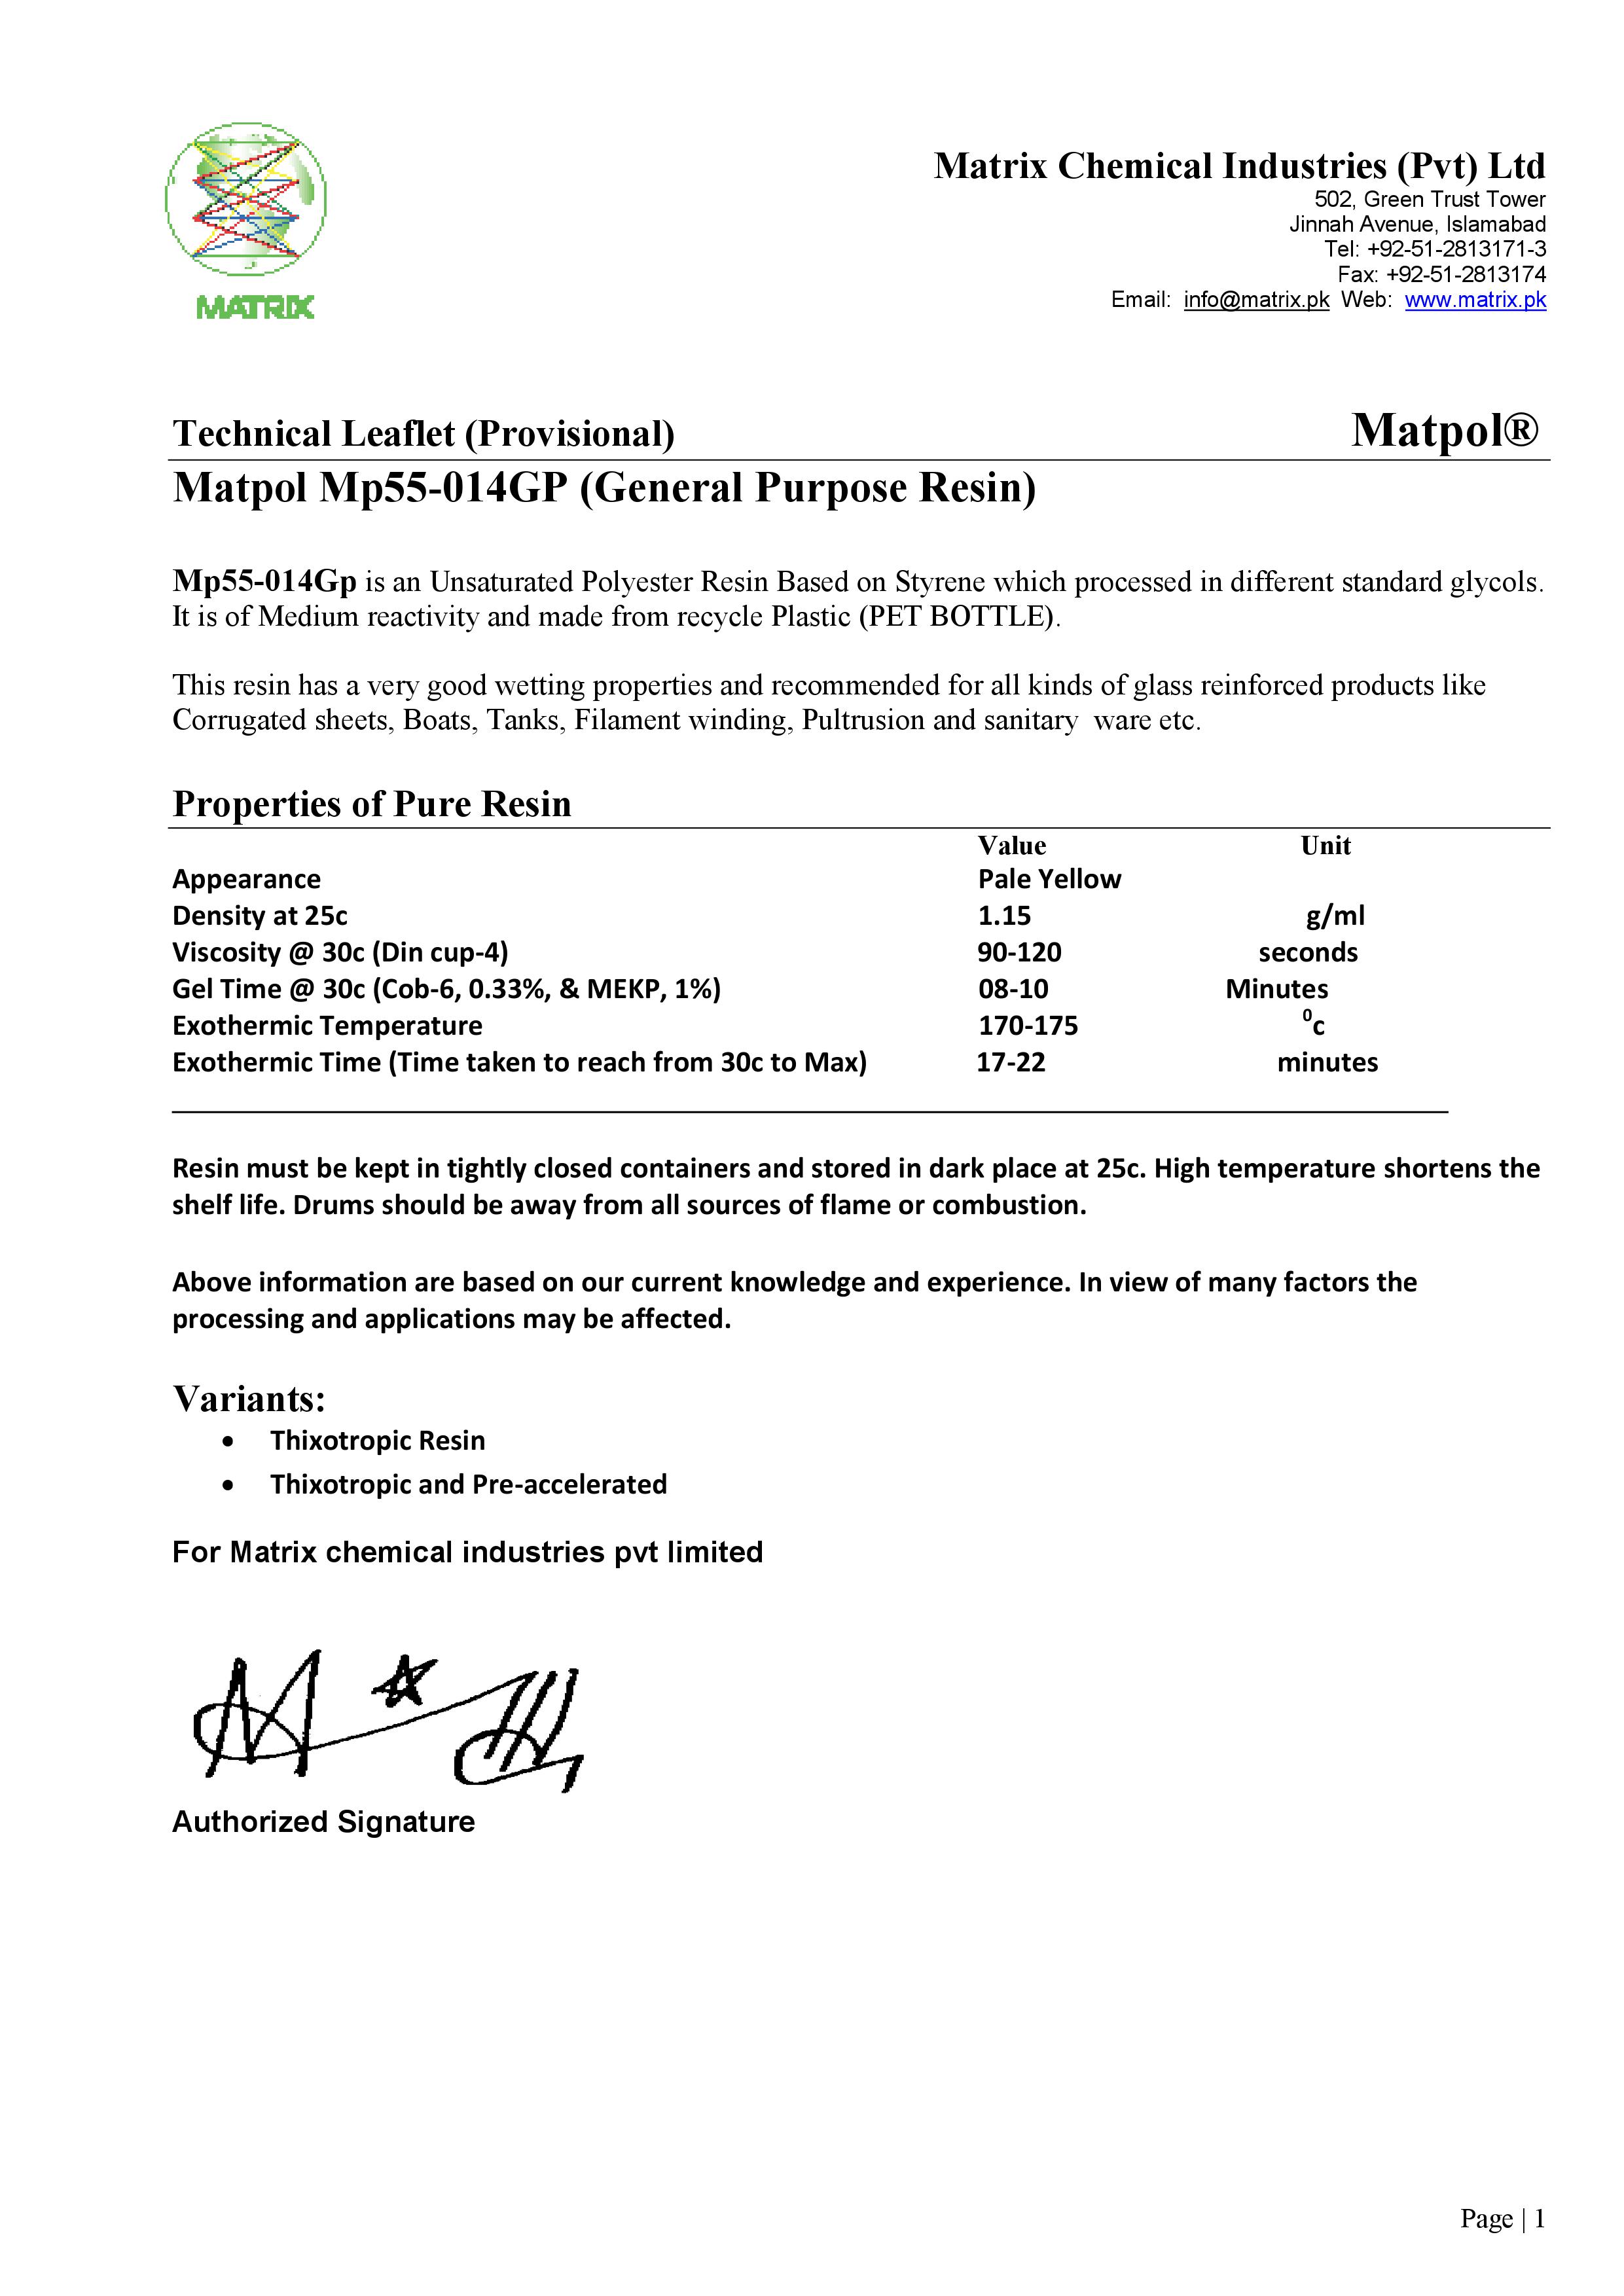 Matpol Mp55-014GP (General Purpose Resin)